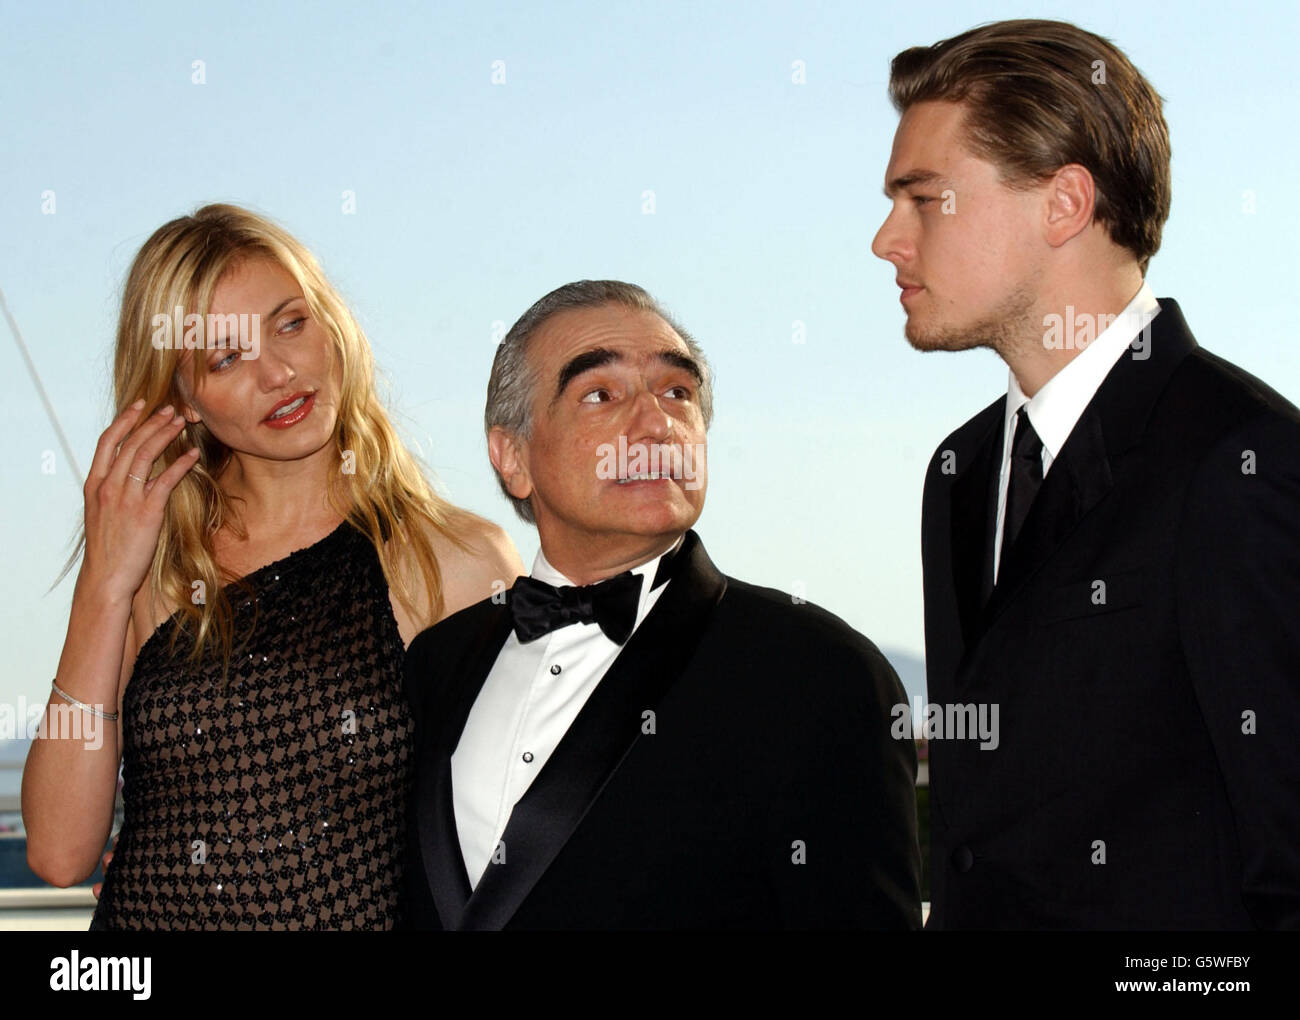 Il regista Martin Scorsese affiancato da Cameron Diaz e Leonardo DiCaprio durante una fotocellula per promuovere l'ultimo film di Scorsese "Gangs of New York" durante il 55° Festival di Cannes. Foto Stock